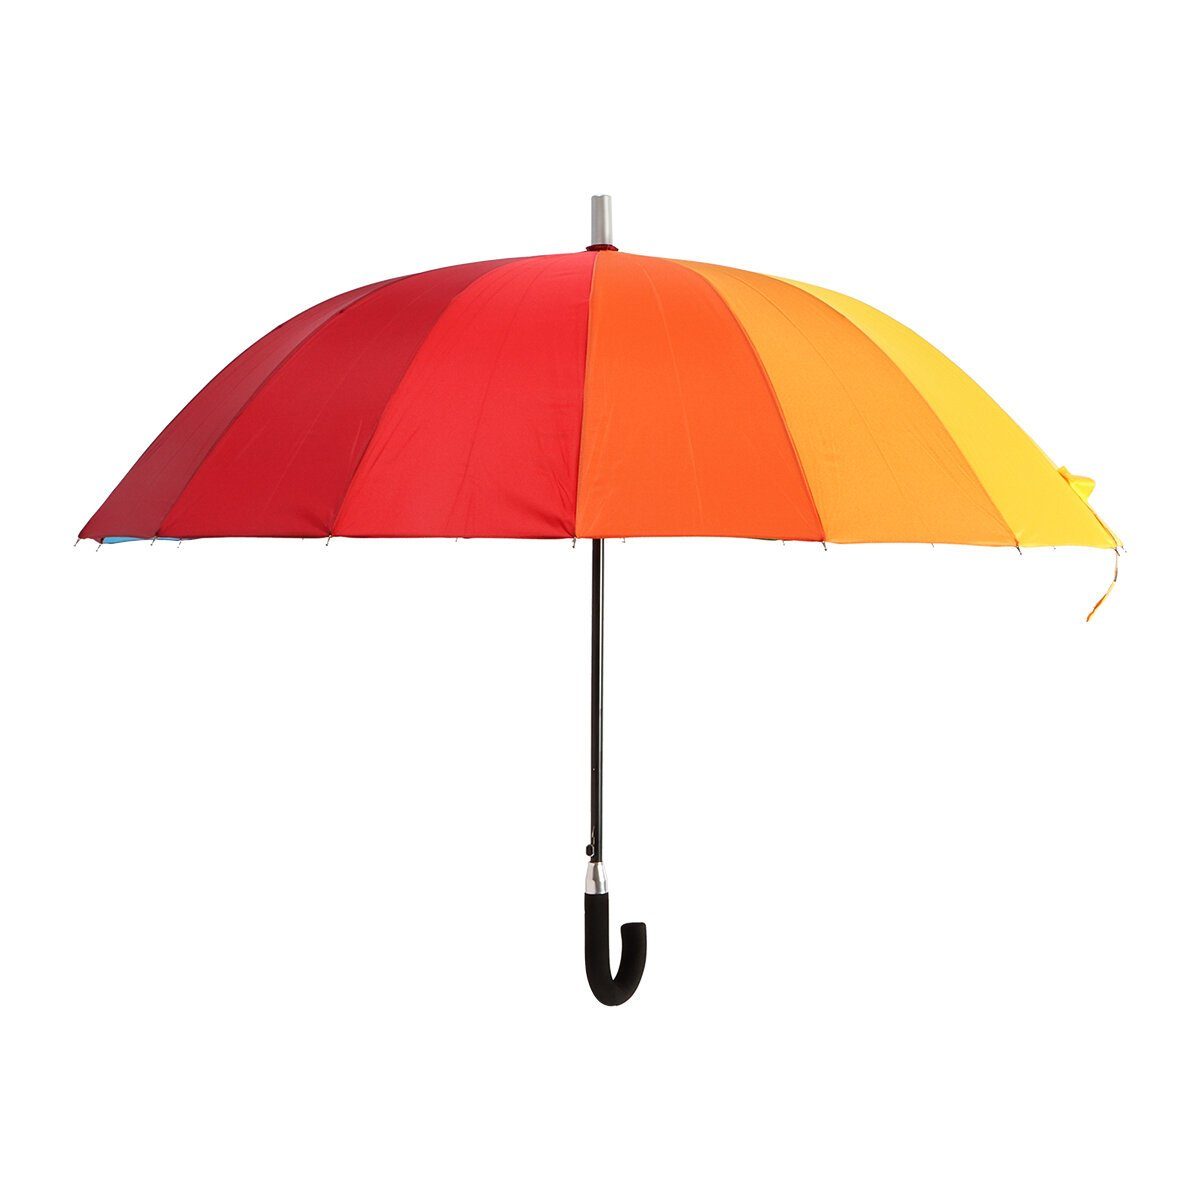 BIGGDESIGN Langregenschirm Biggdesign Moods Up Regenschirm